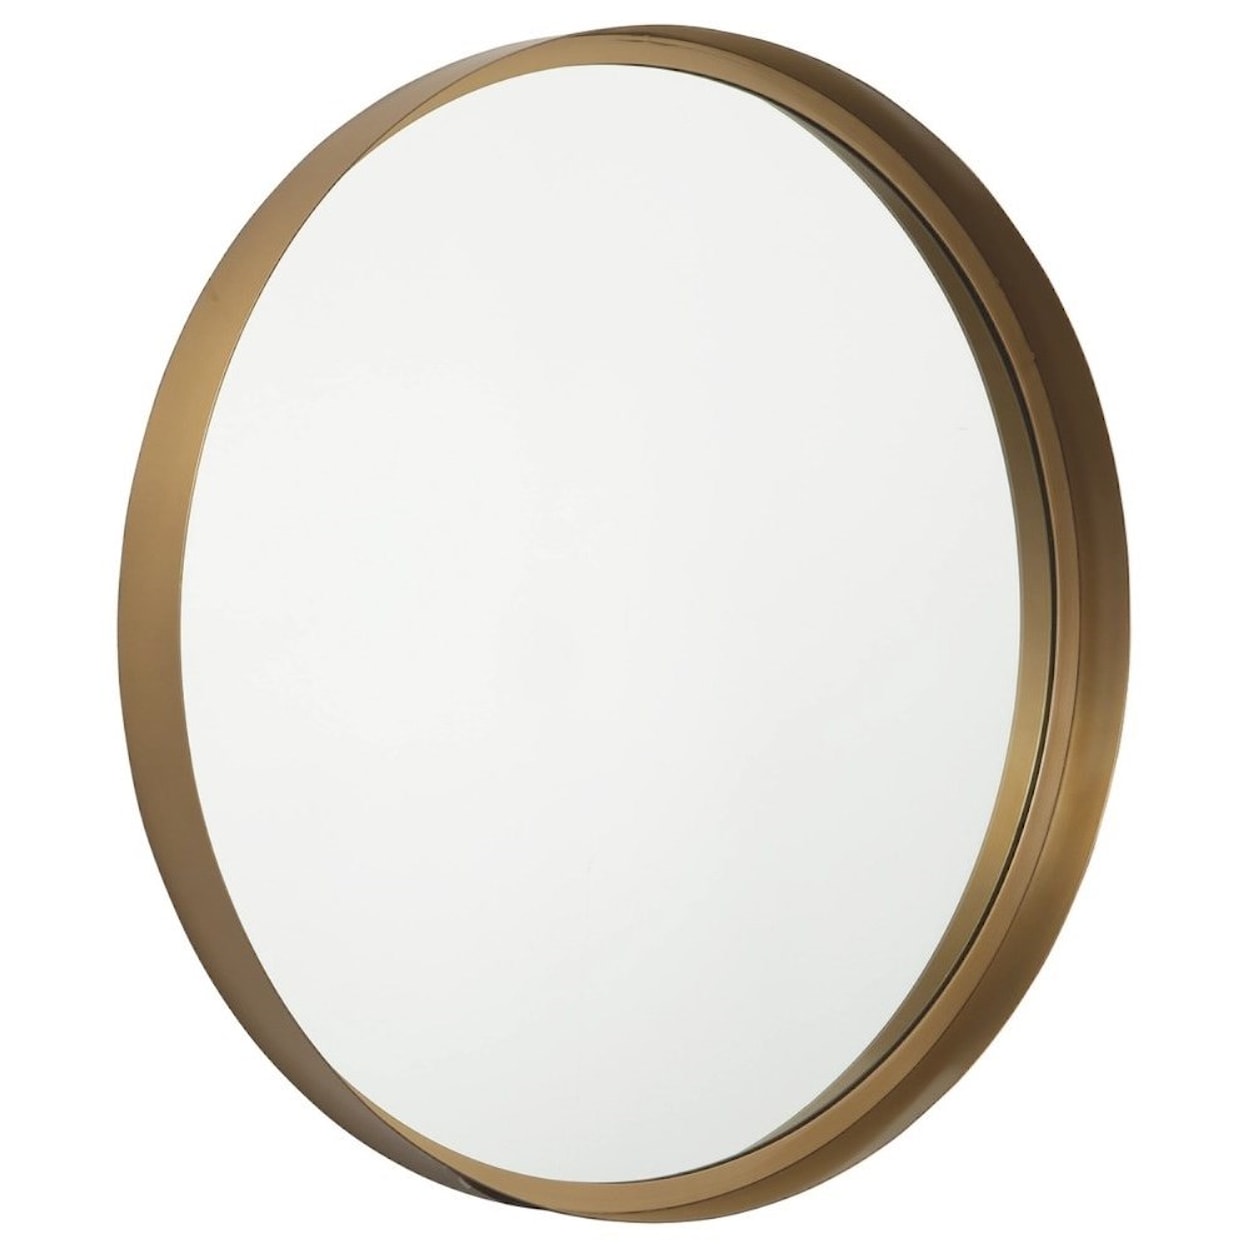 Signature Design Accent Mirrors Elanah Gold Finish Accent Mirror